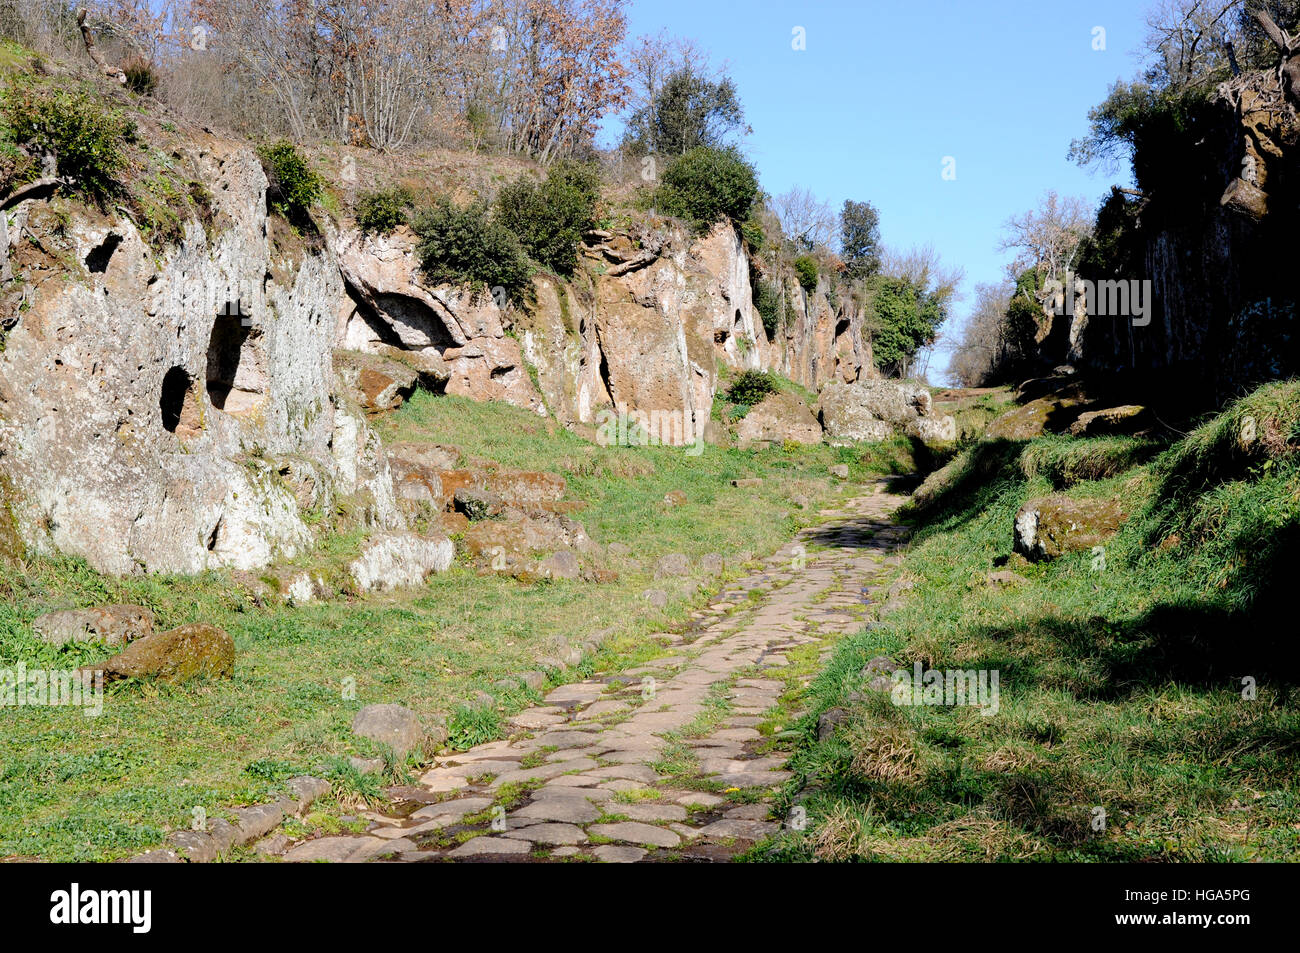 L'antica strada romana Amerina fiancheggiata dai resti di tombe etrusche. Questa strada legato alla città di Roma e l'Umbria. Foto Stock